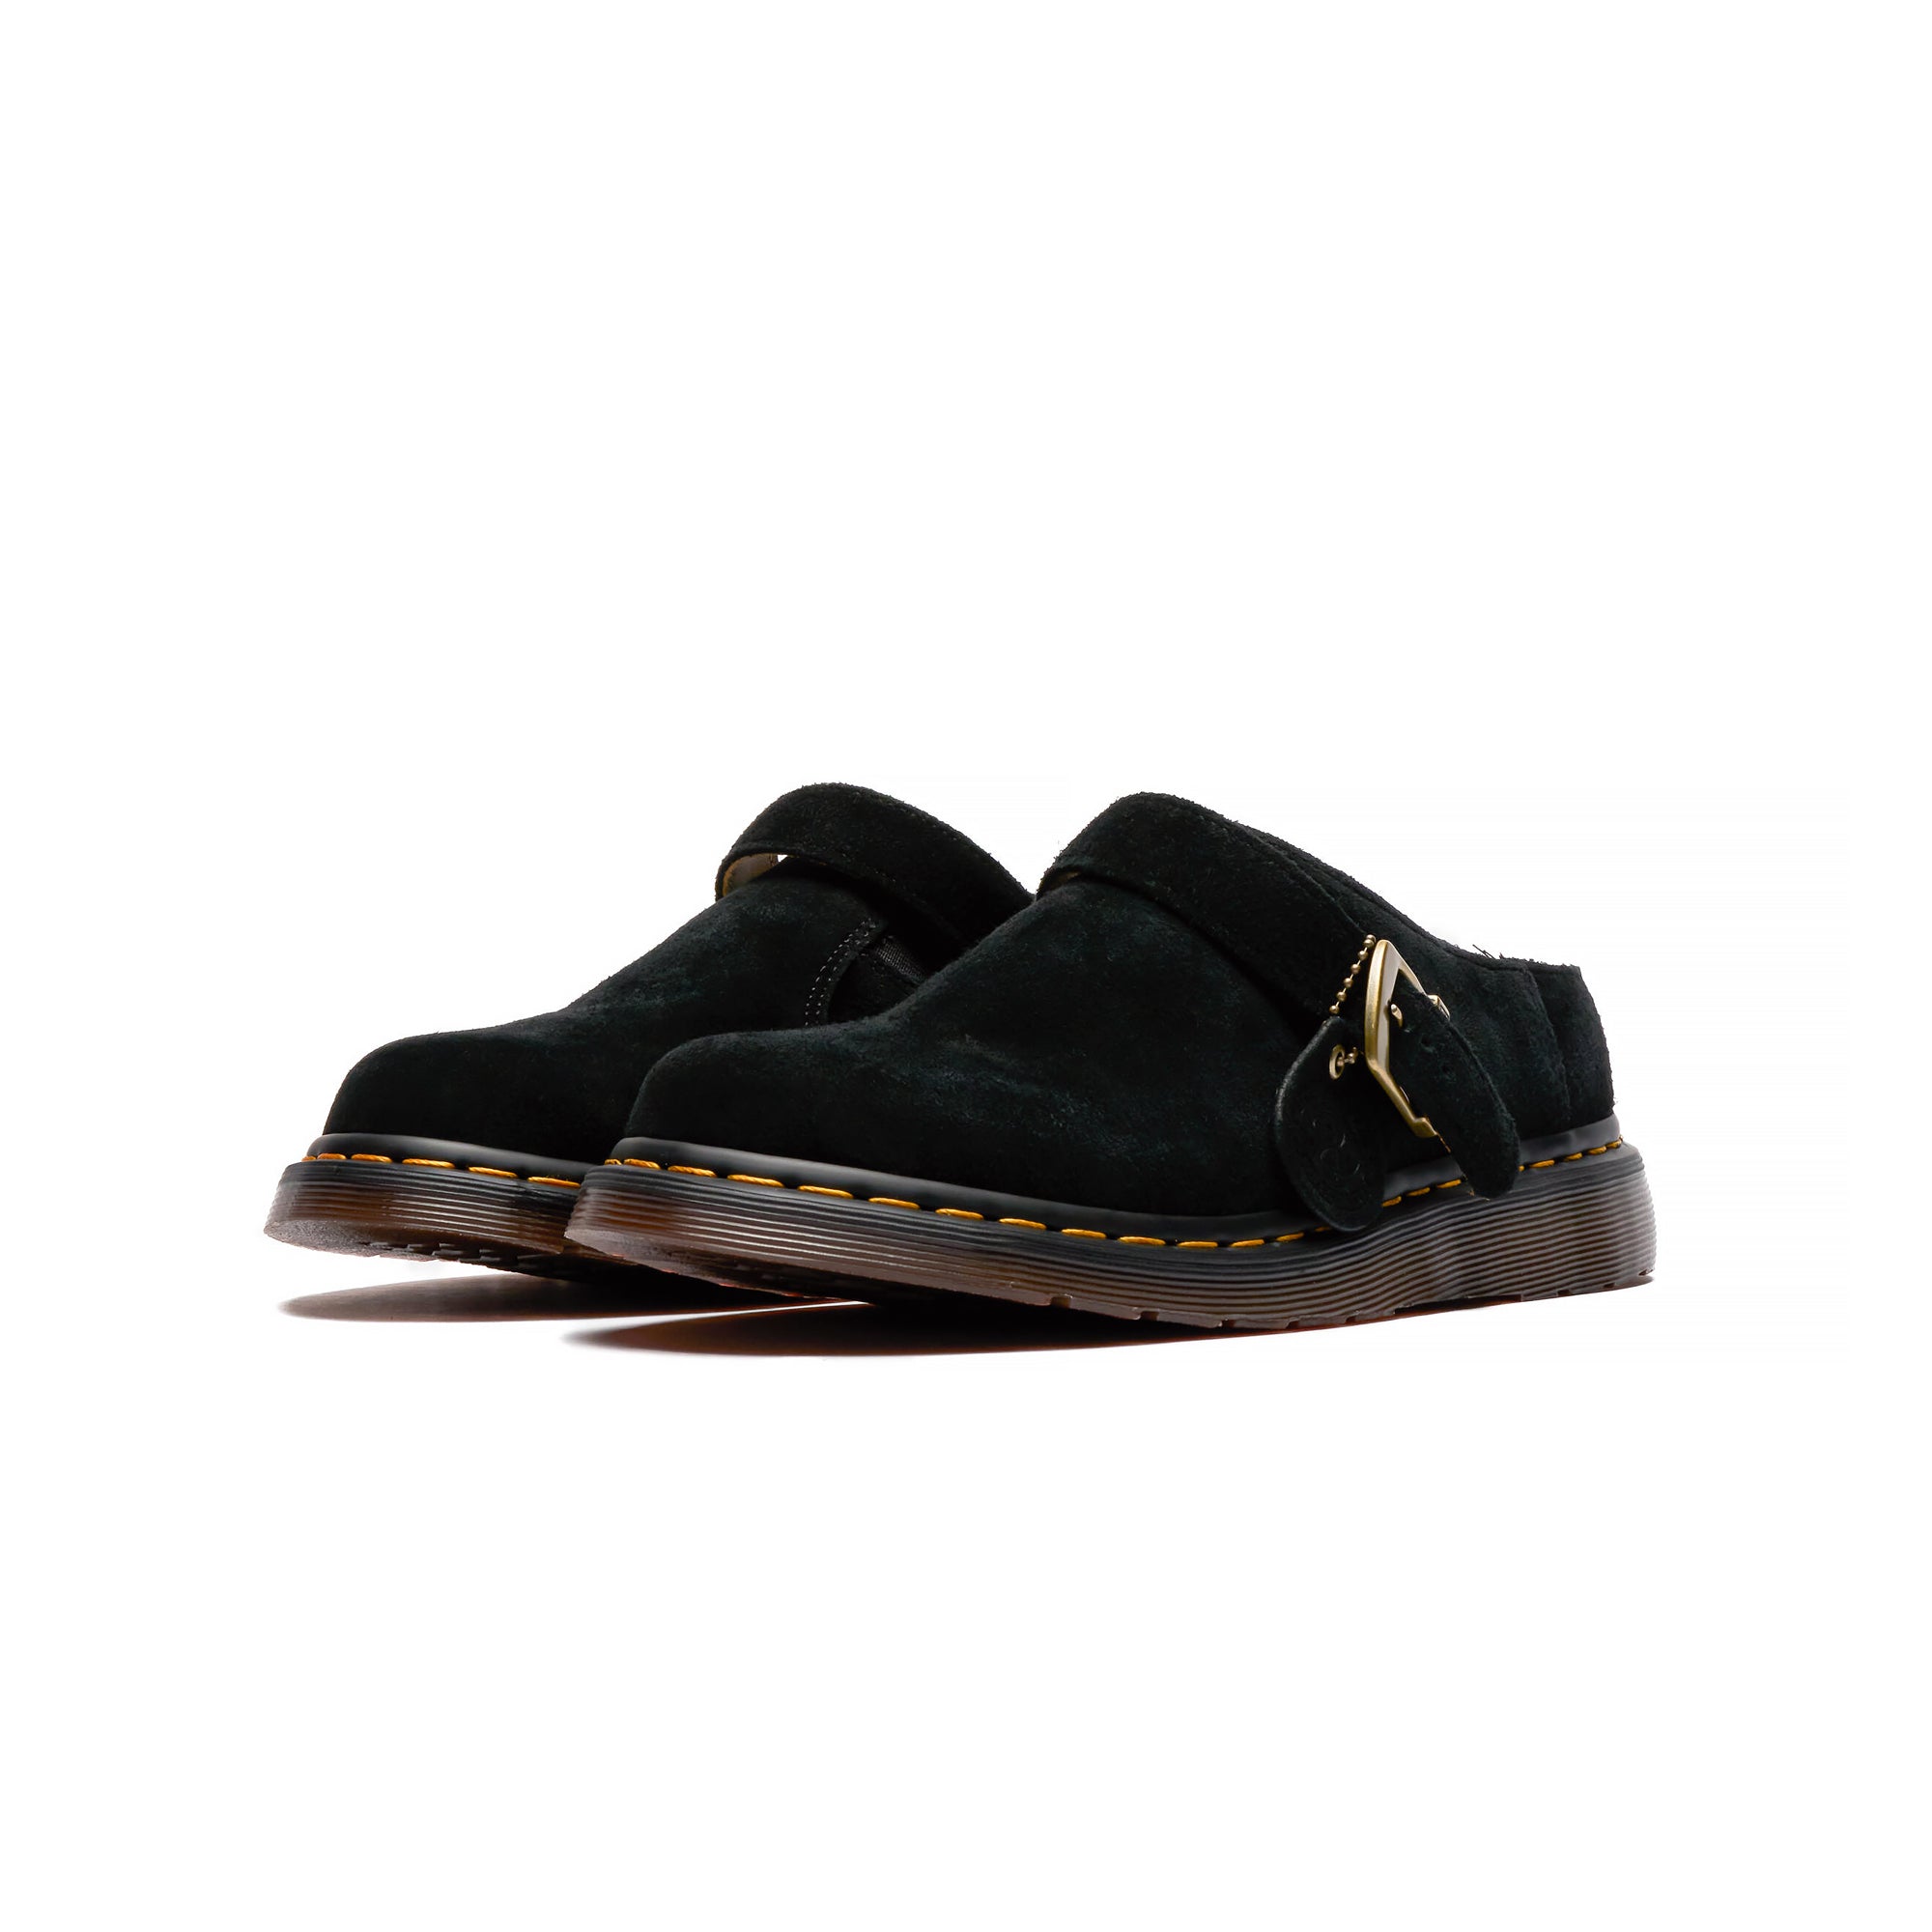 Josef Analine Leather Buckle Slide Sandals in Black | Dr. Martens